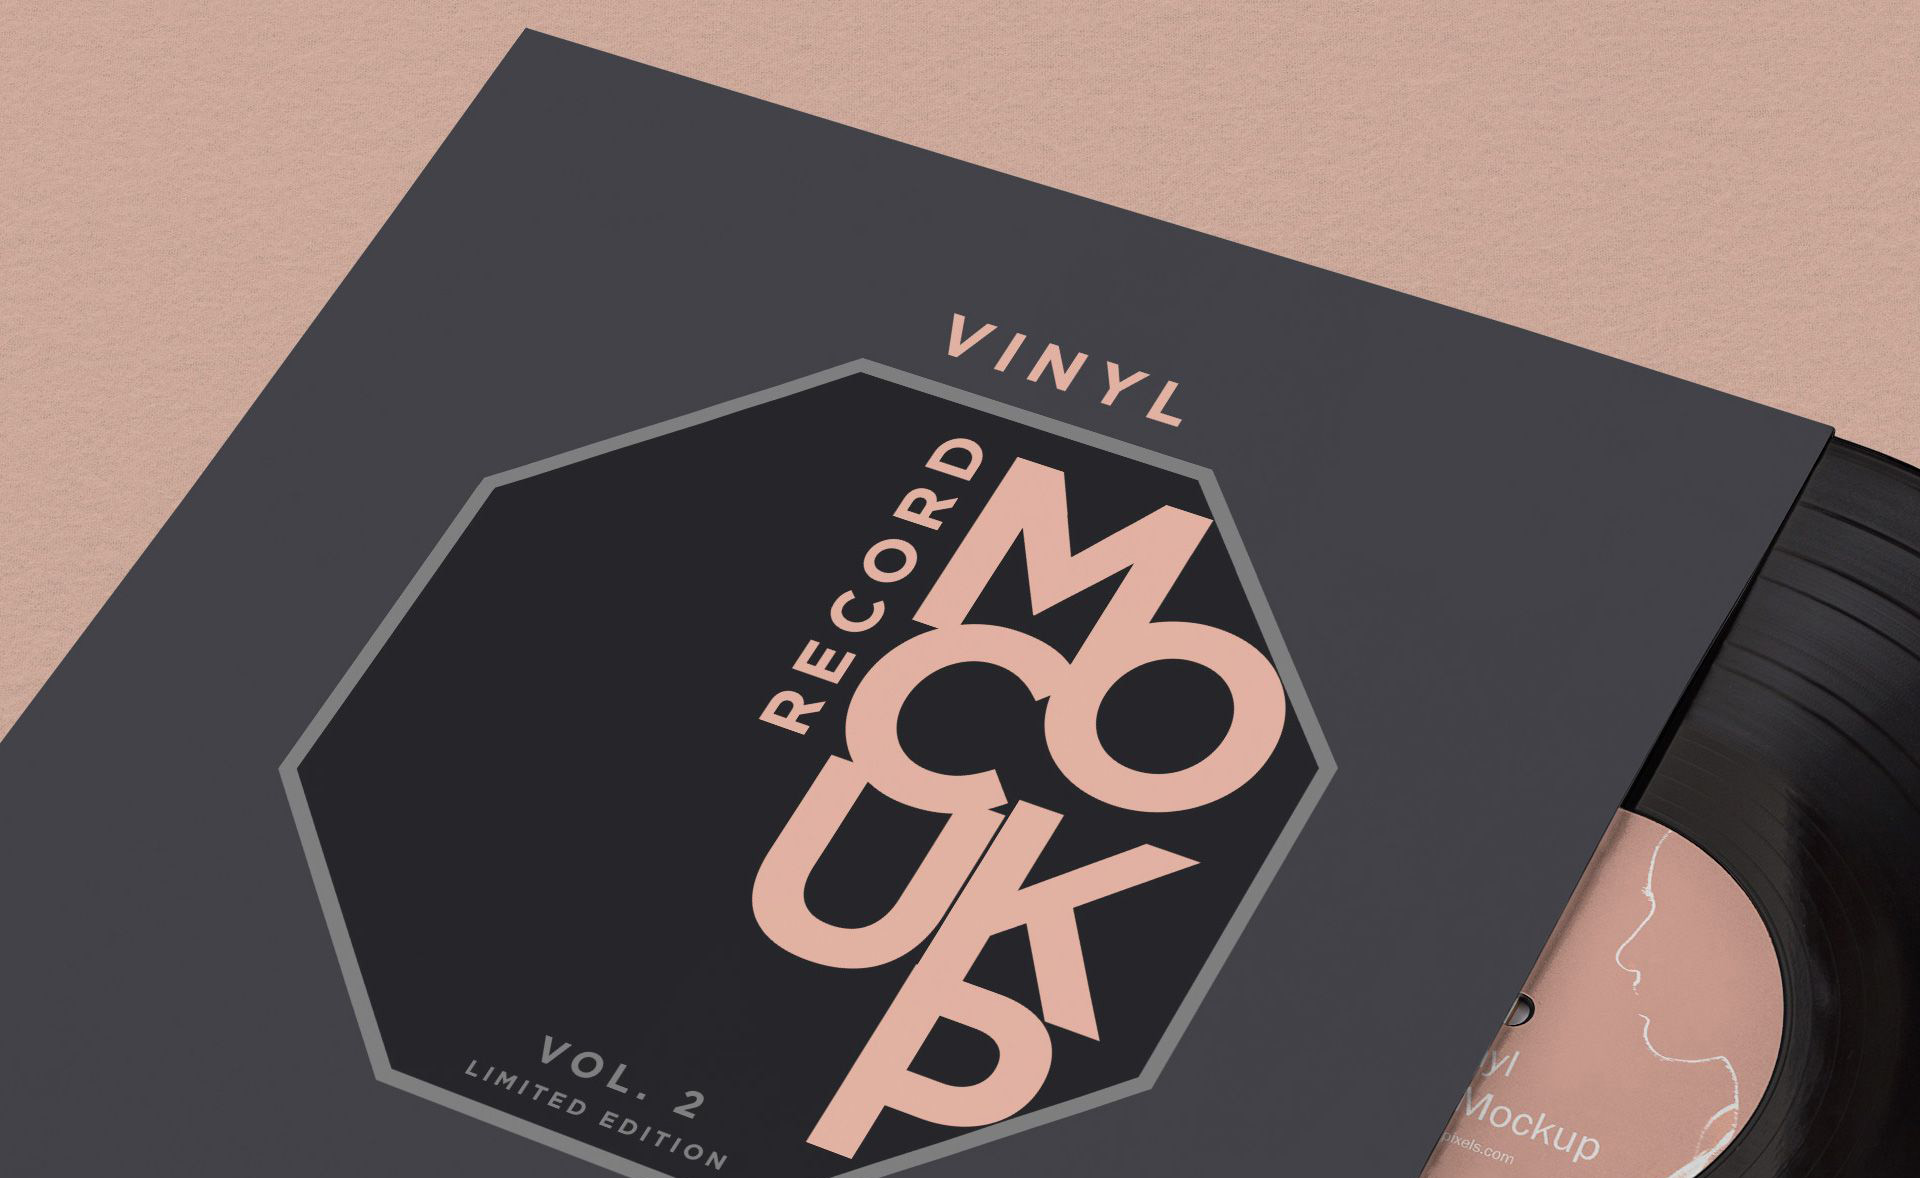 6款高品质唱片CD包装设计展示样机 6 Vinyl Record Mockup插图4